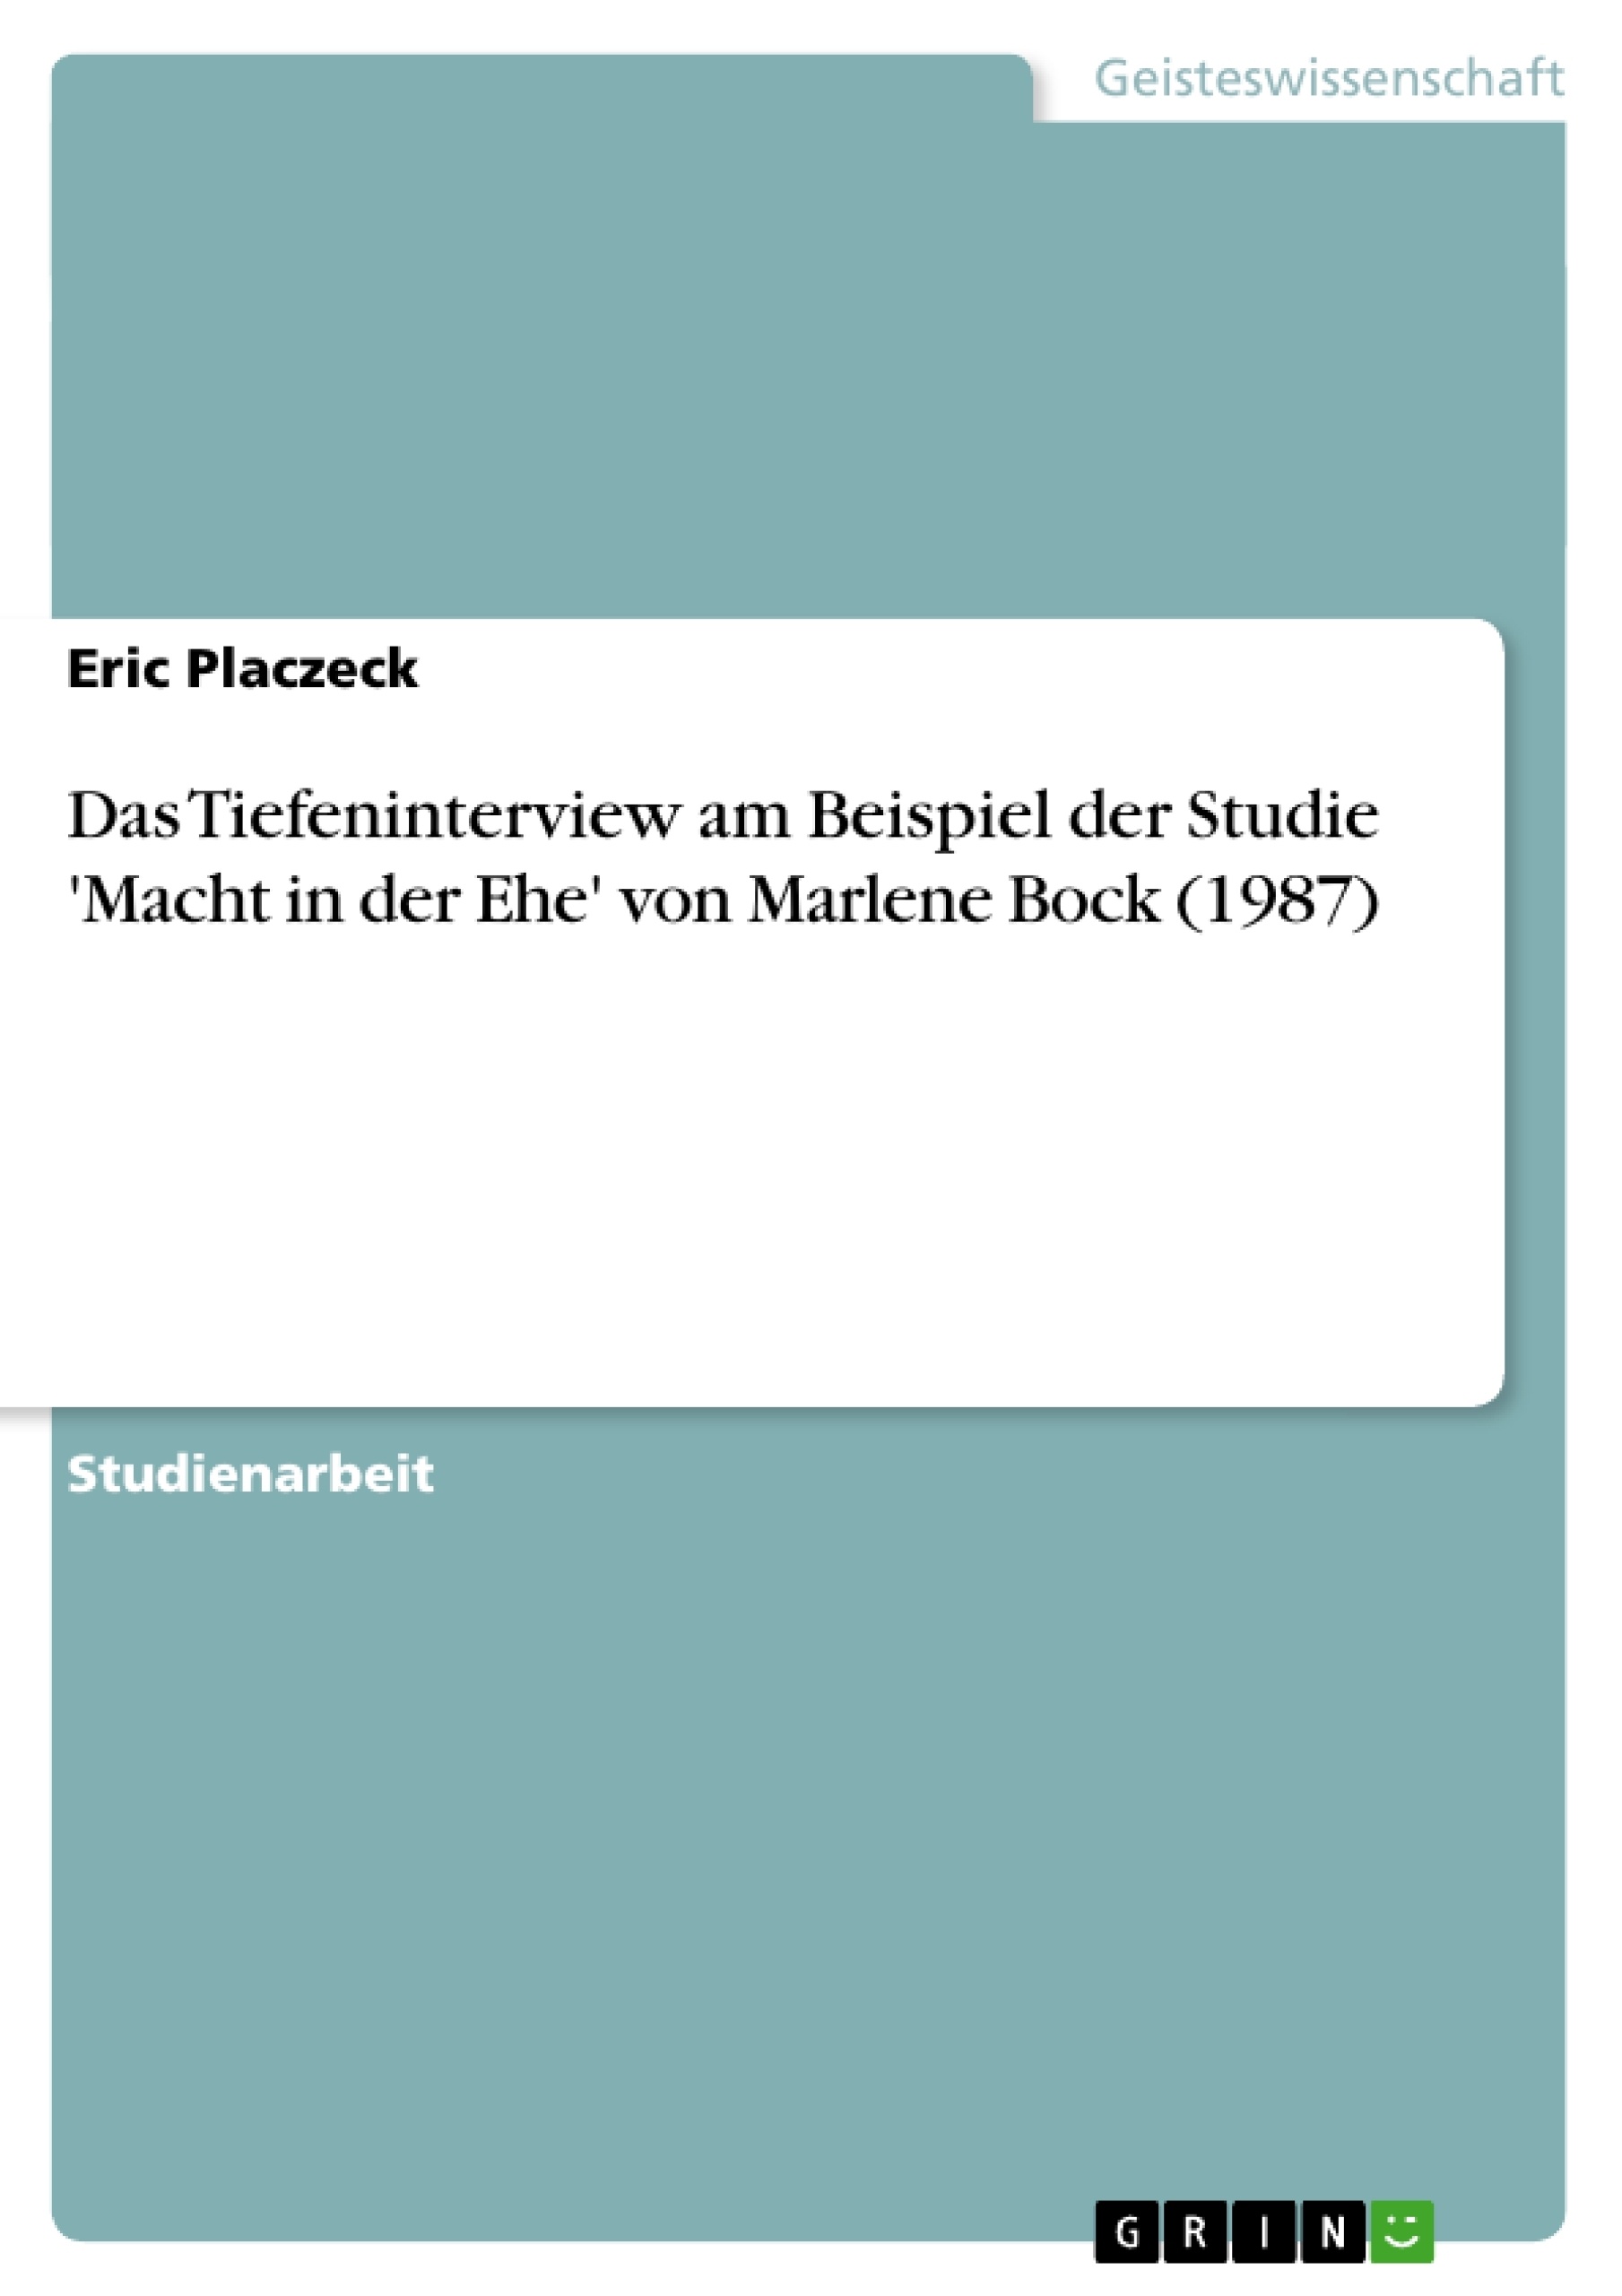 Title: Das Tiefeninterview am Beispiel der Studie 'Macht in der Ehe' von Marlene Bock (1987)